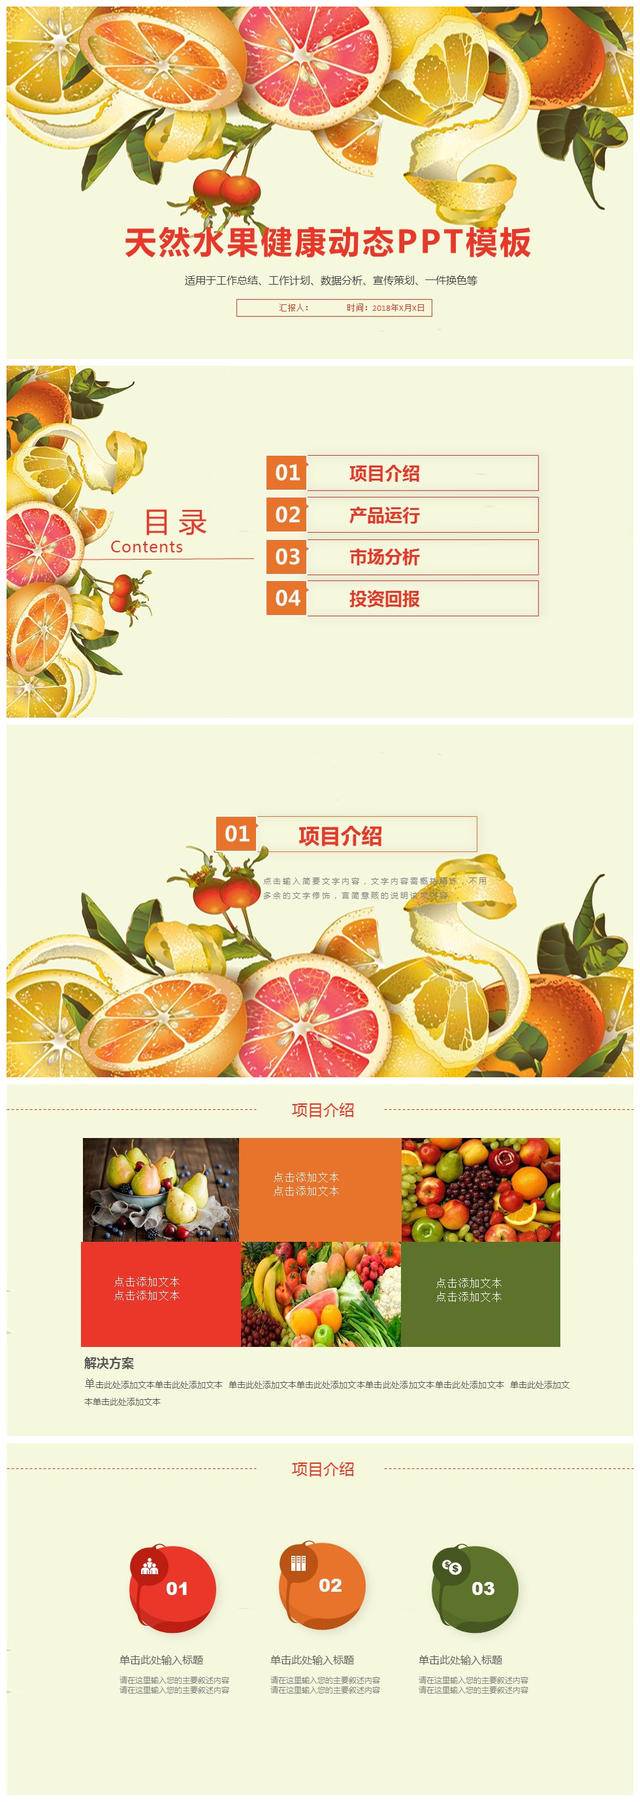 健康水果运动公司产品介绍PPT模板-聚给网